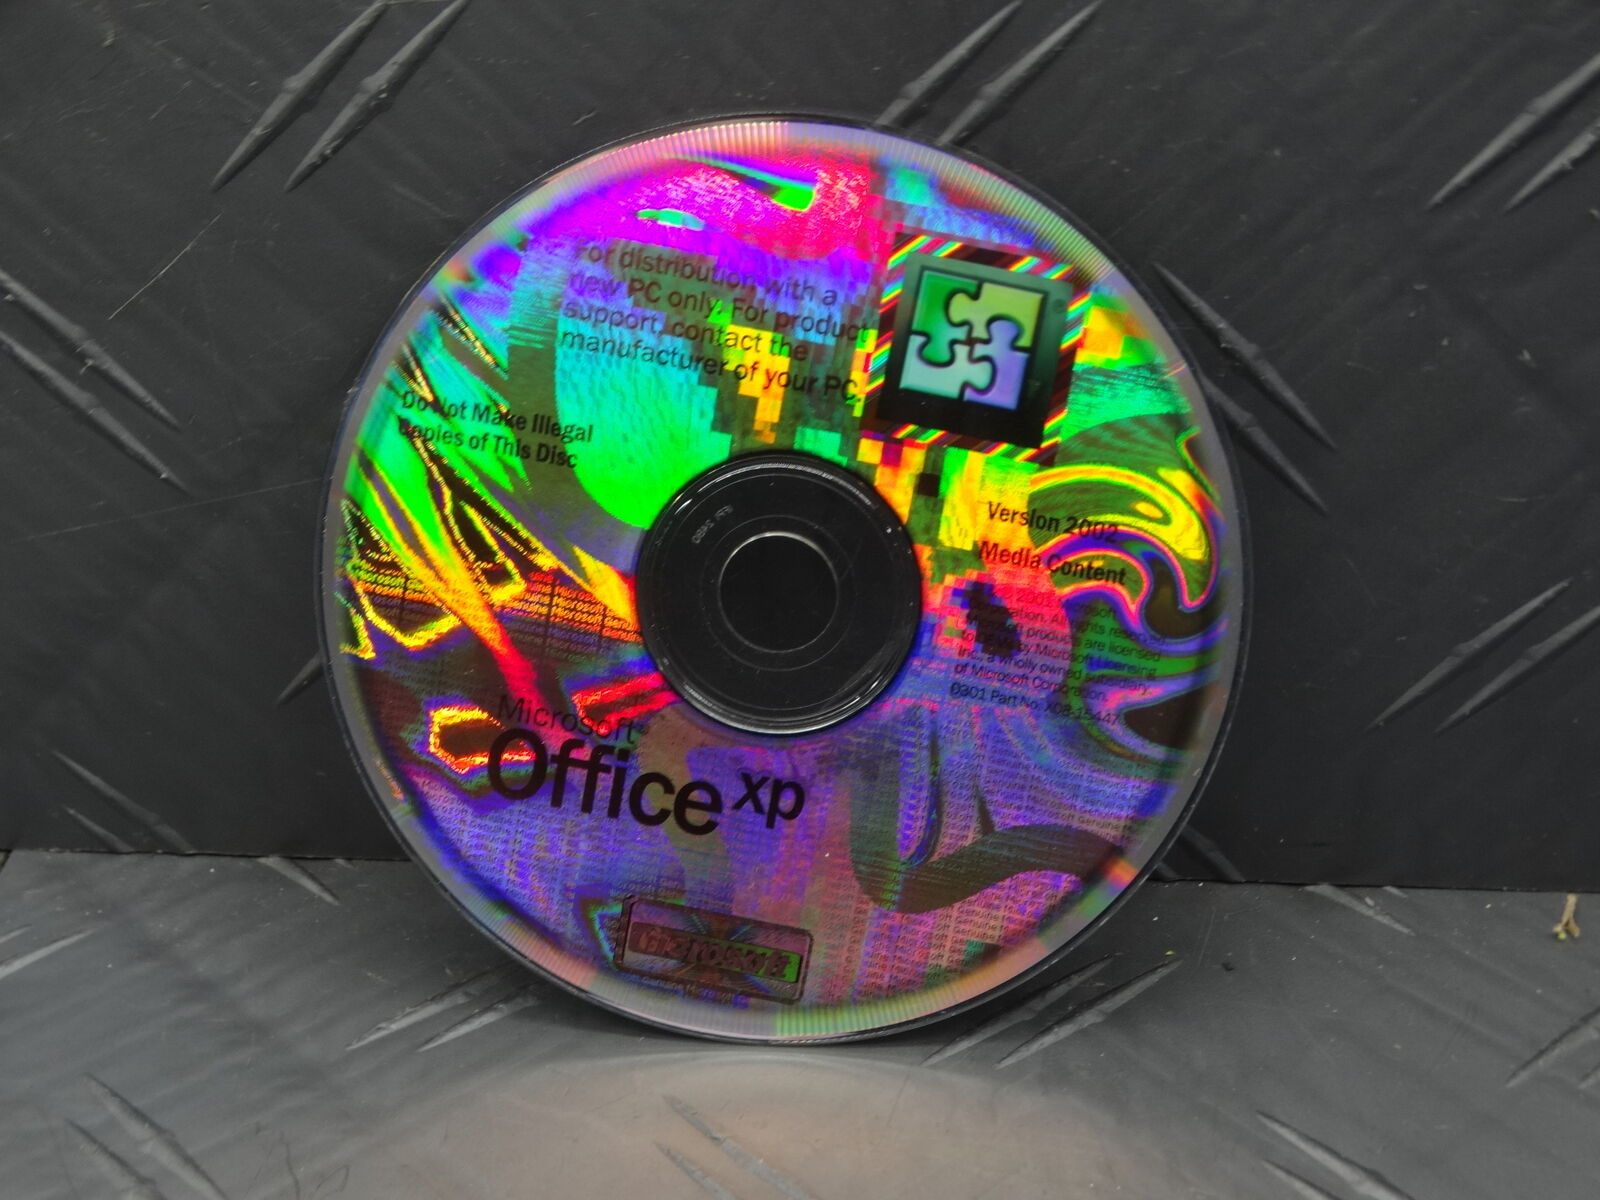 Microsoft Office XP 2002 Media Content Authentic Original